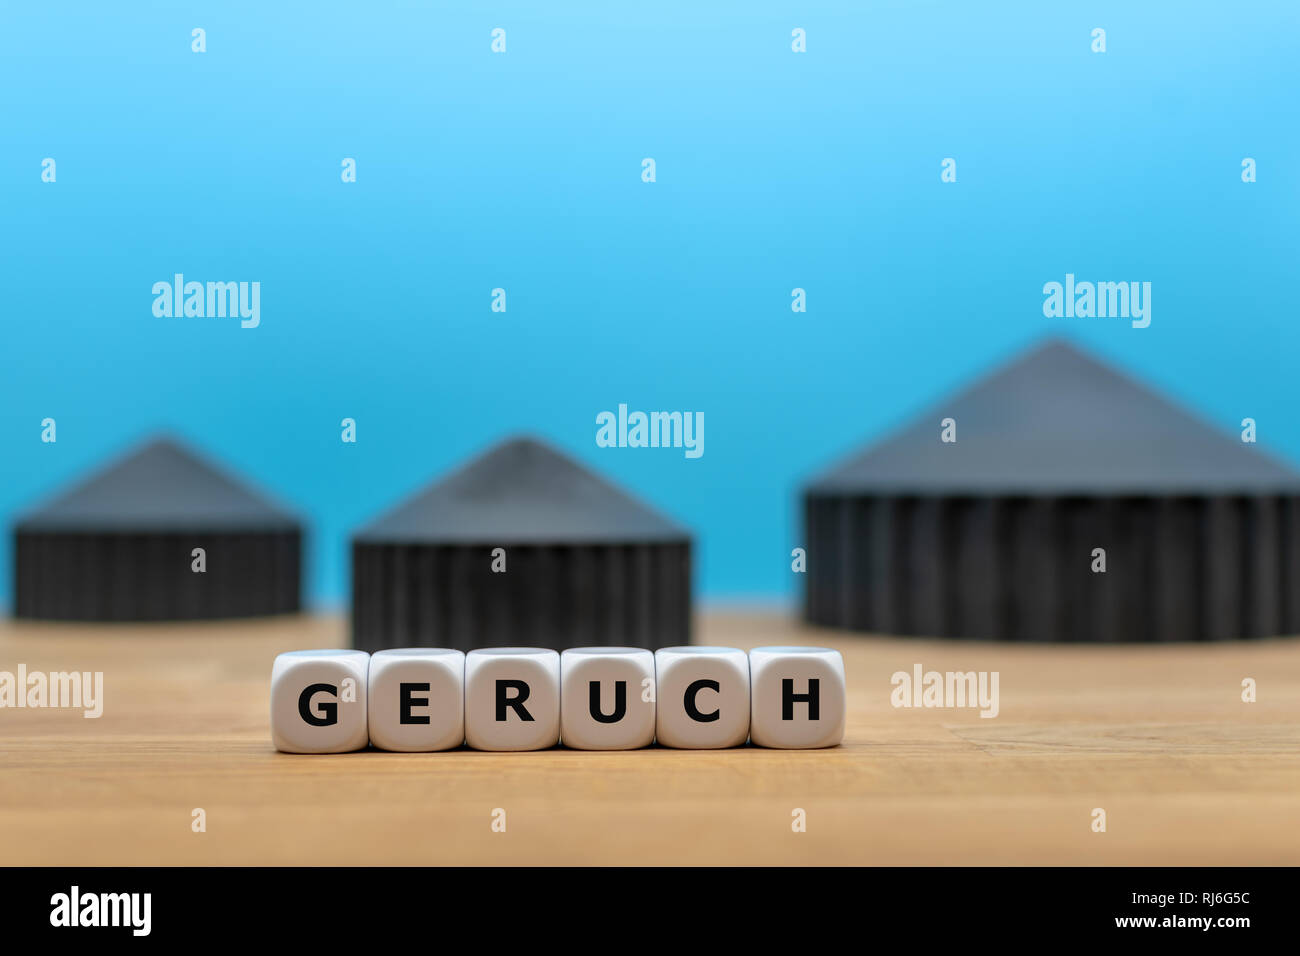 Formulaire dés le mot allemand 'GERUCH' ('Smell' en anglais) en face d'un modèle d'une bio-usine à gaz. Banque D'Images